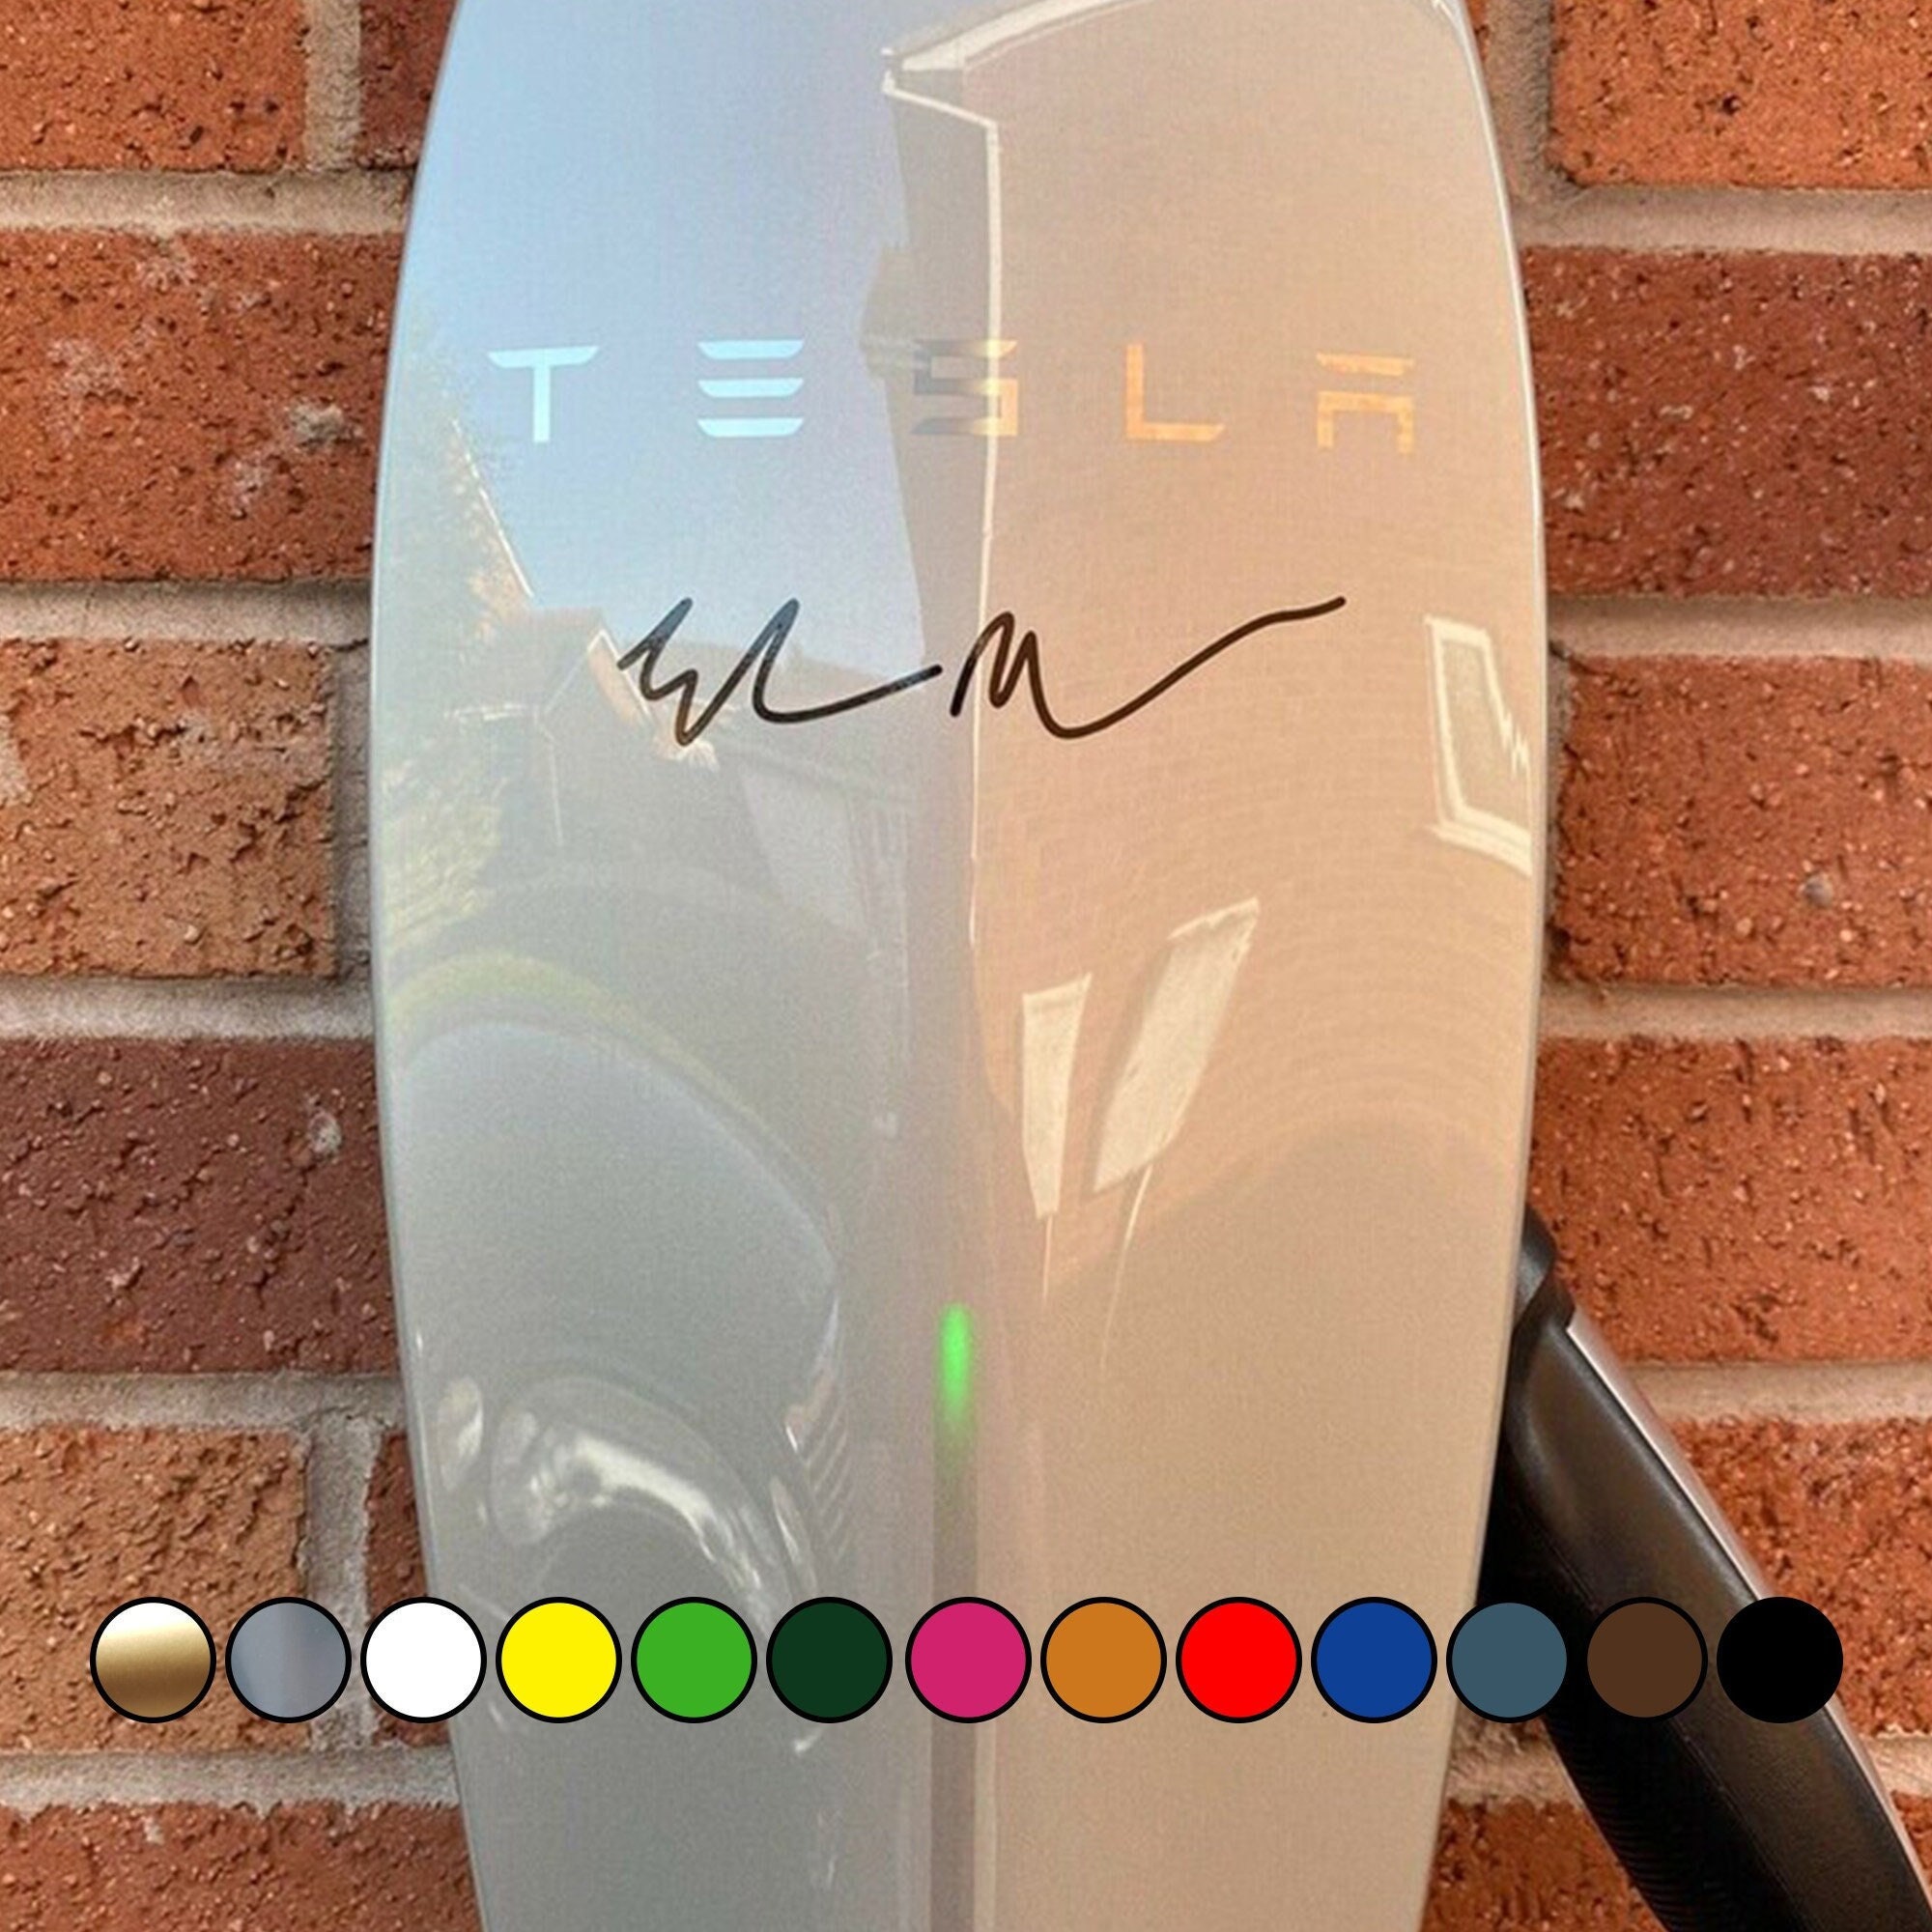 Haha, Gas - Tesla Model 3 - Elon Musk - Model 3 - Sticker